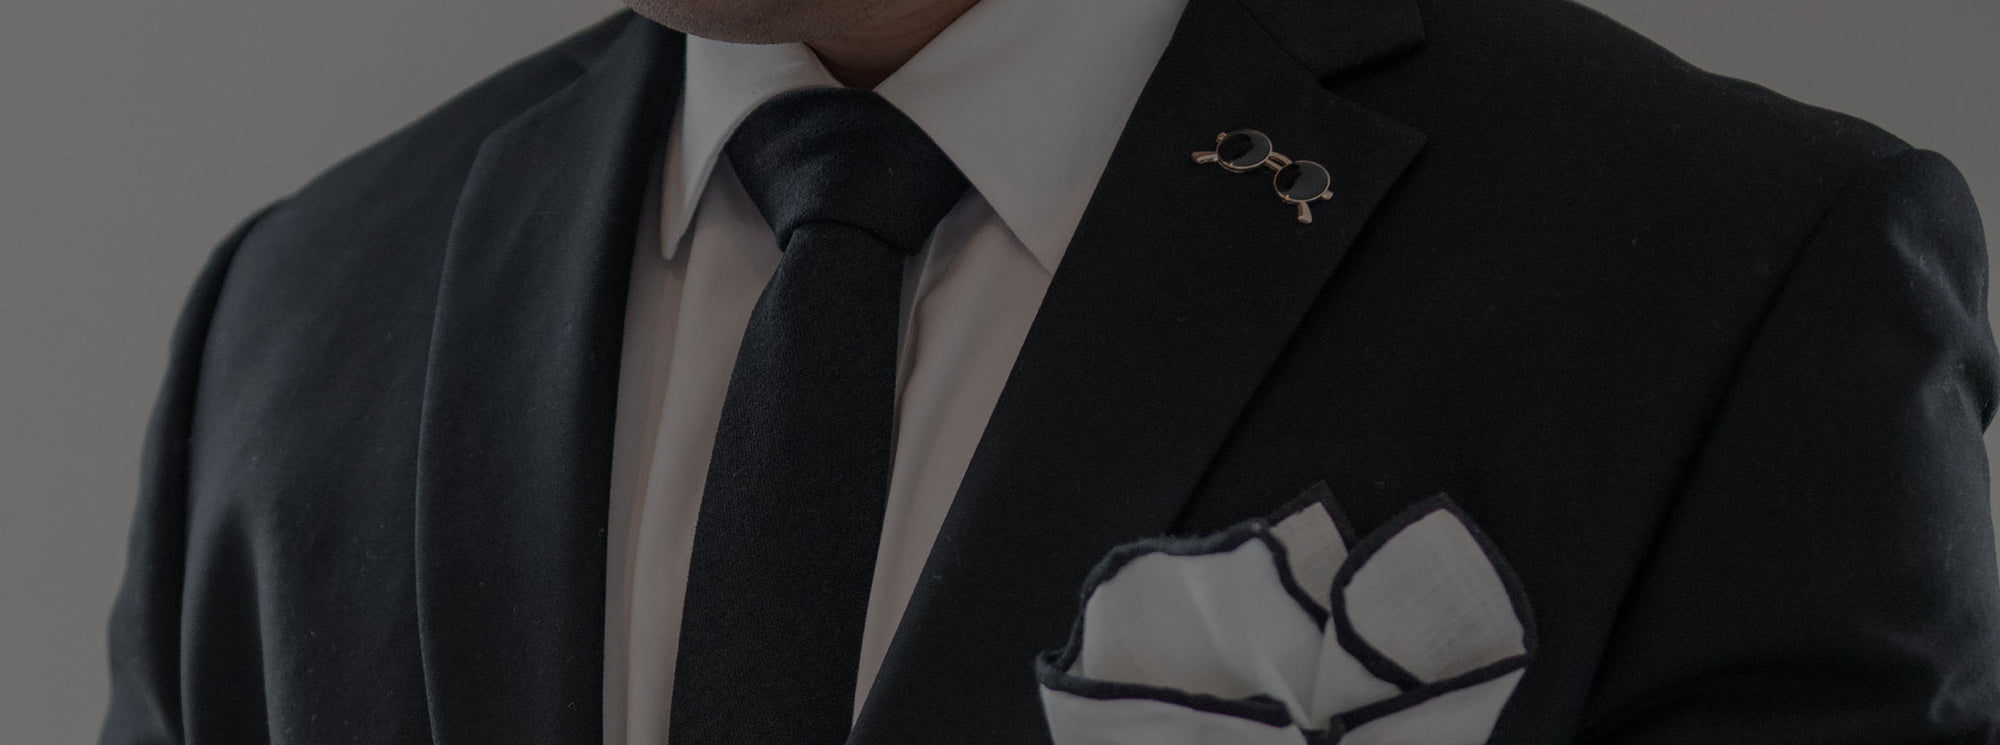 Black Tie with a black suit